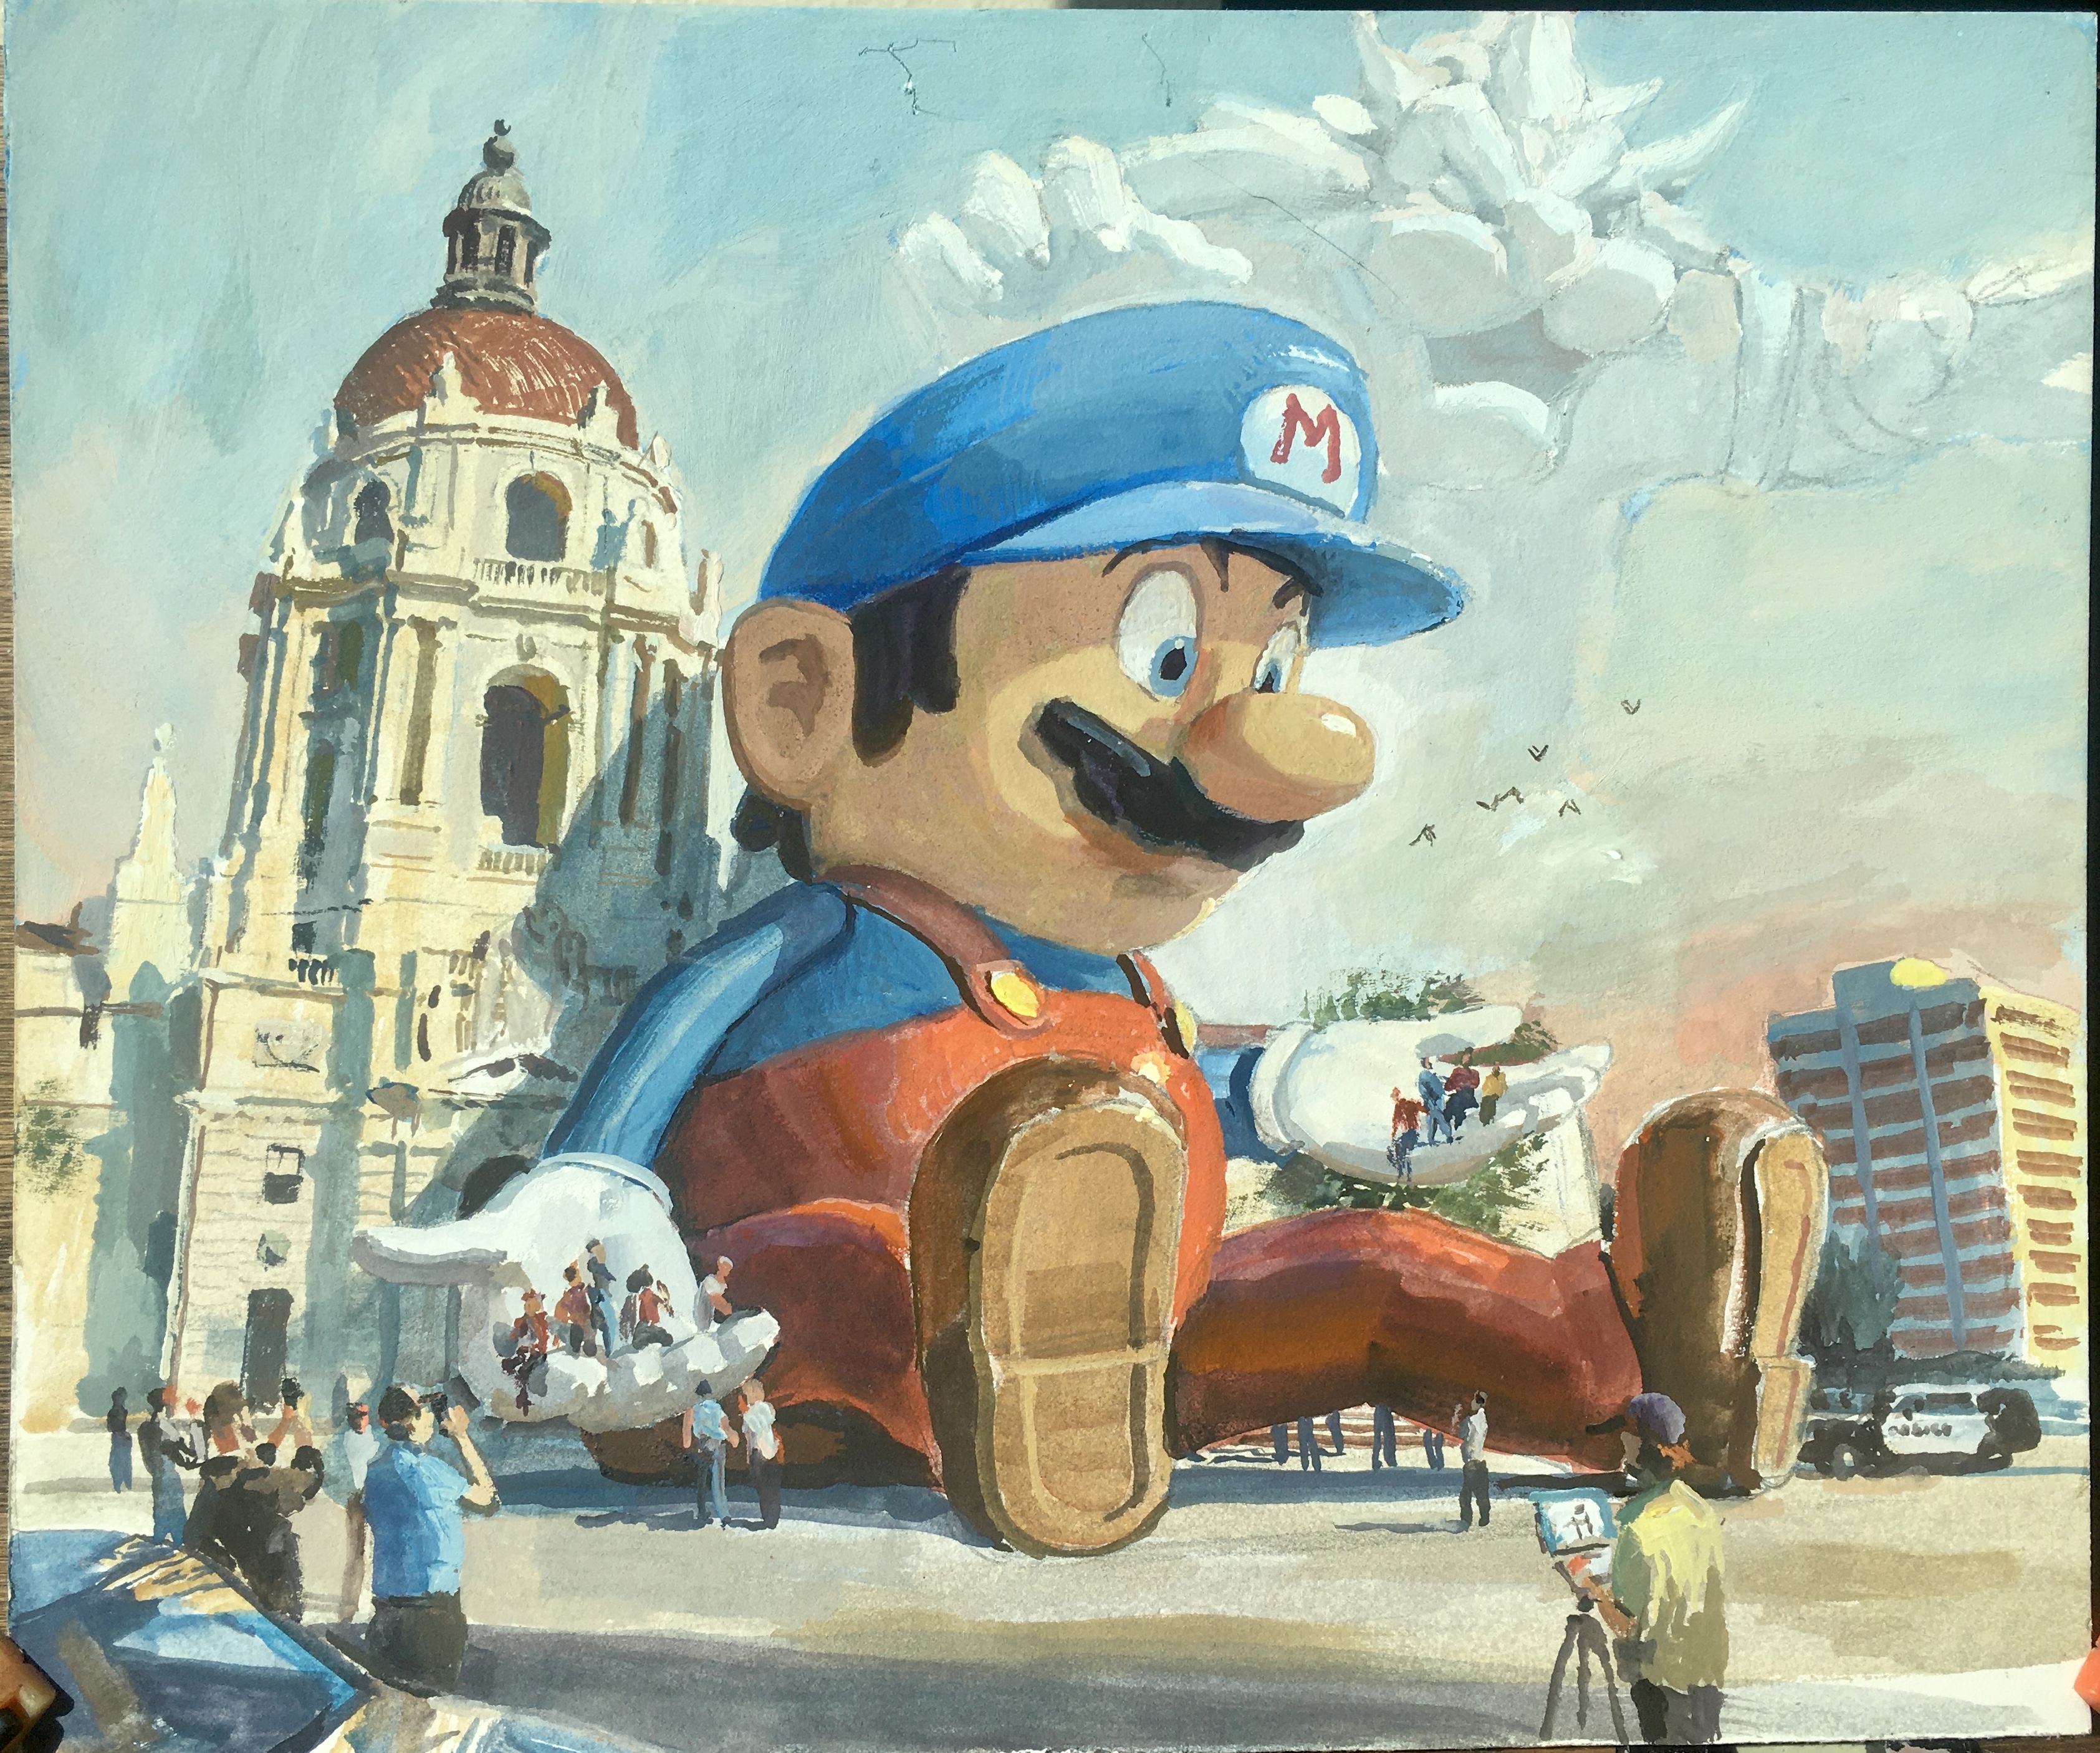 Mario Odyssey 2 concept Art by an AI : r/Mario